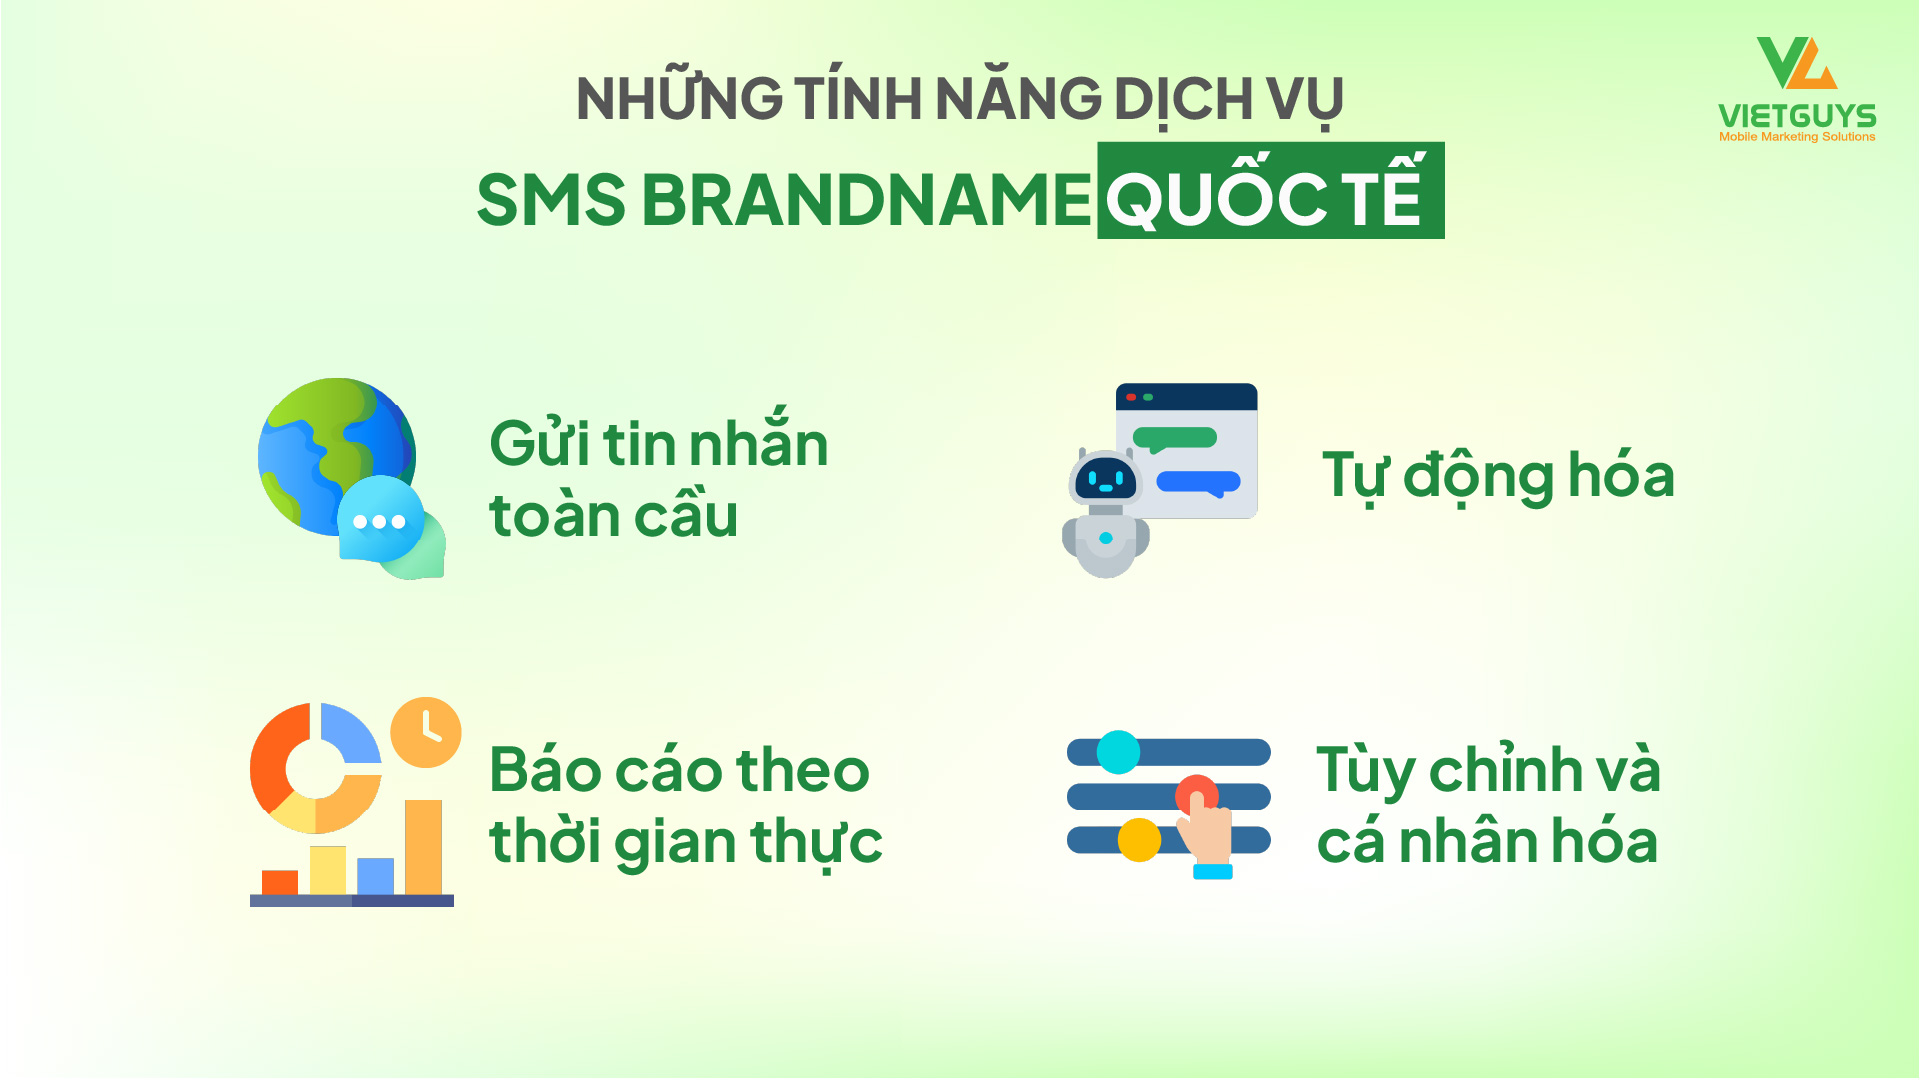 Lợi ích dịch vụ SMS quốc tế.